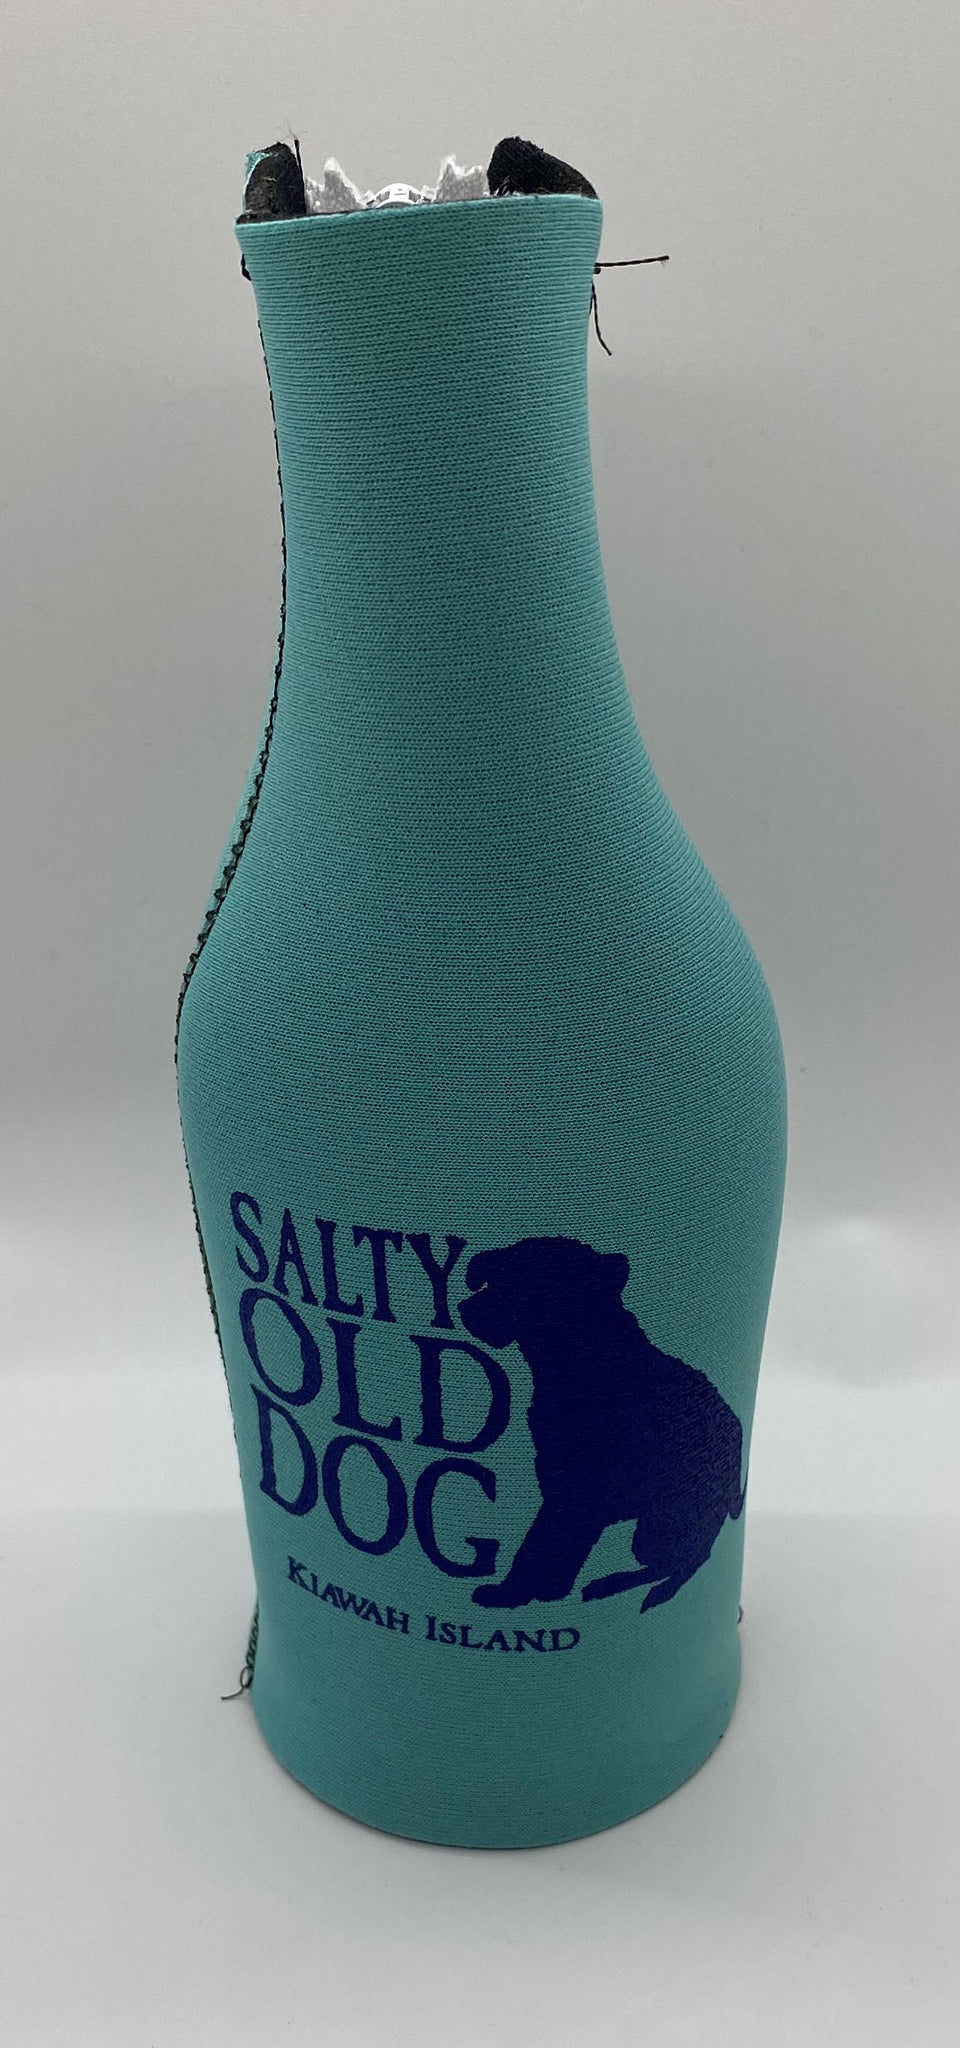 KI Salty Old Dog Bottle Cooler